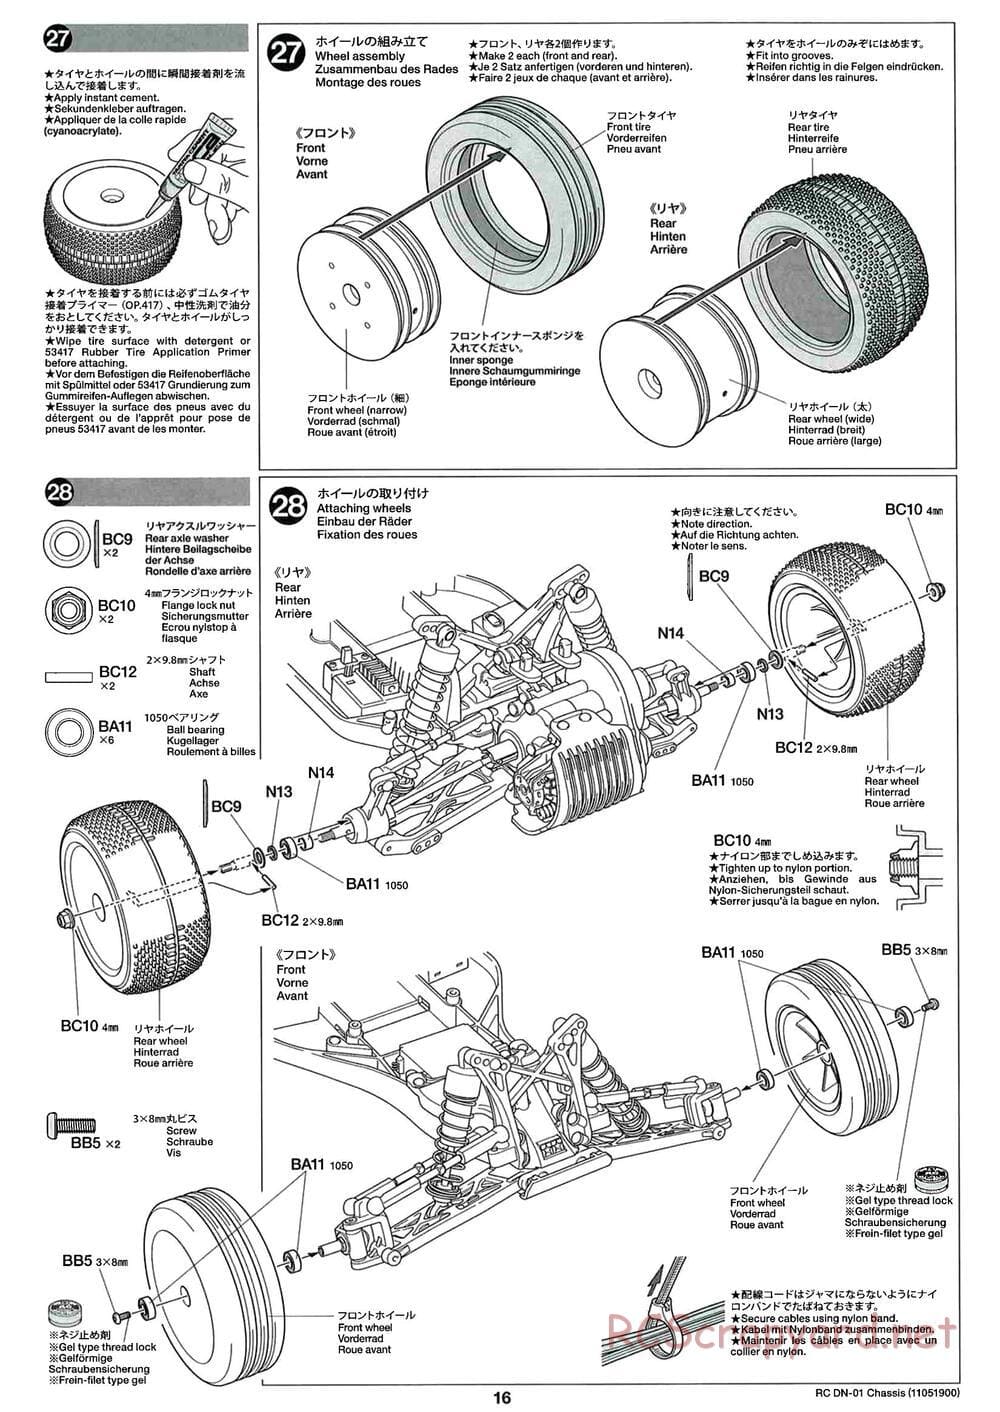 Tamiya - DN-01 Chassis - Manual - Page 16